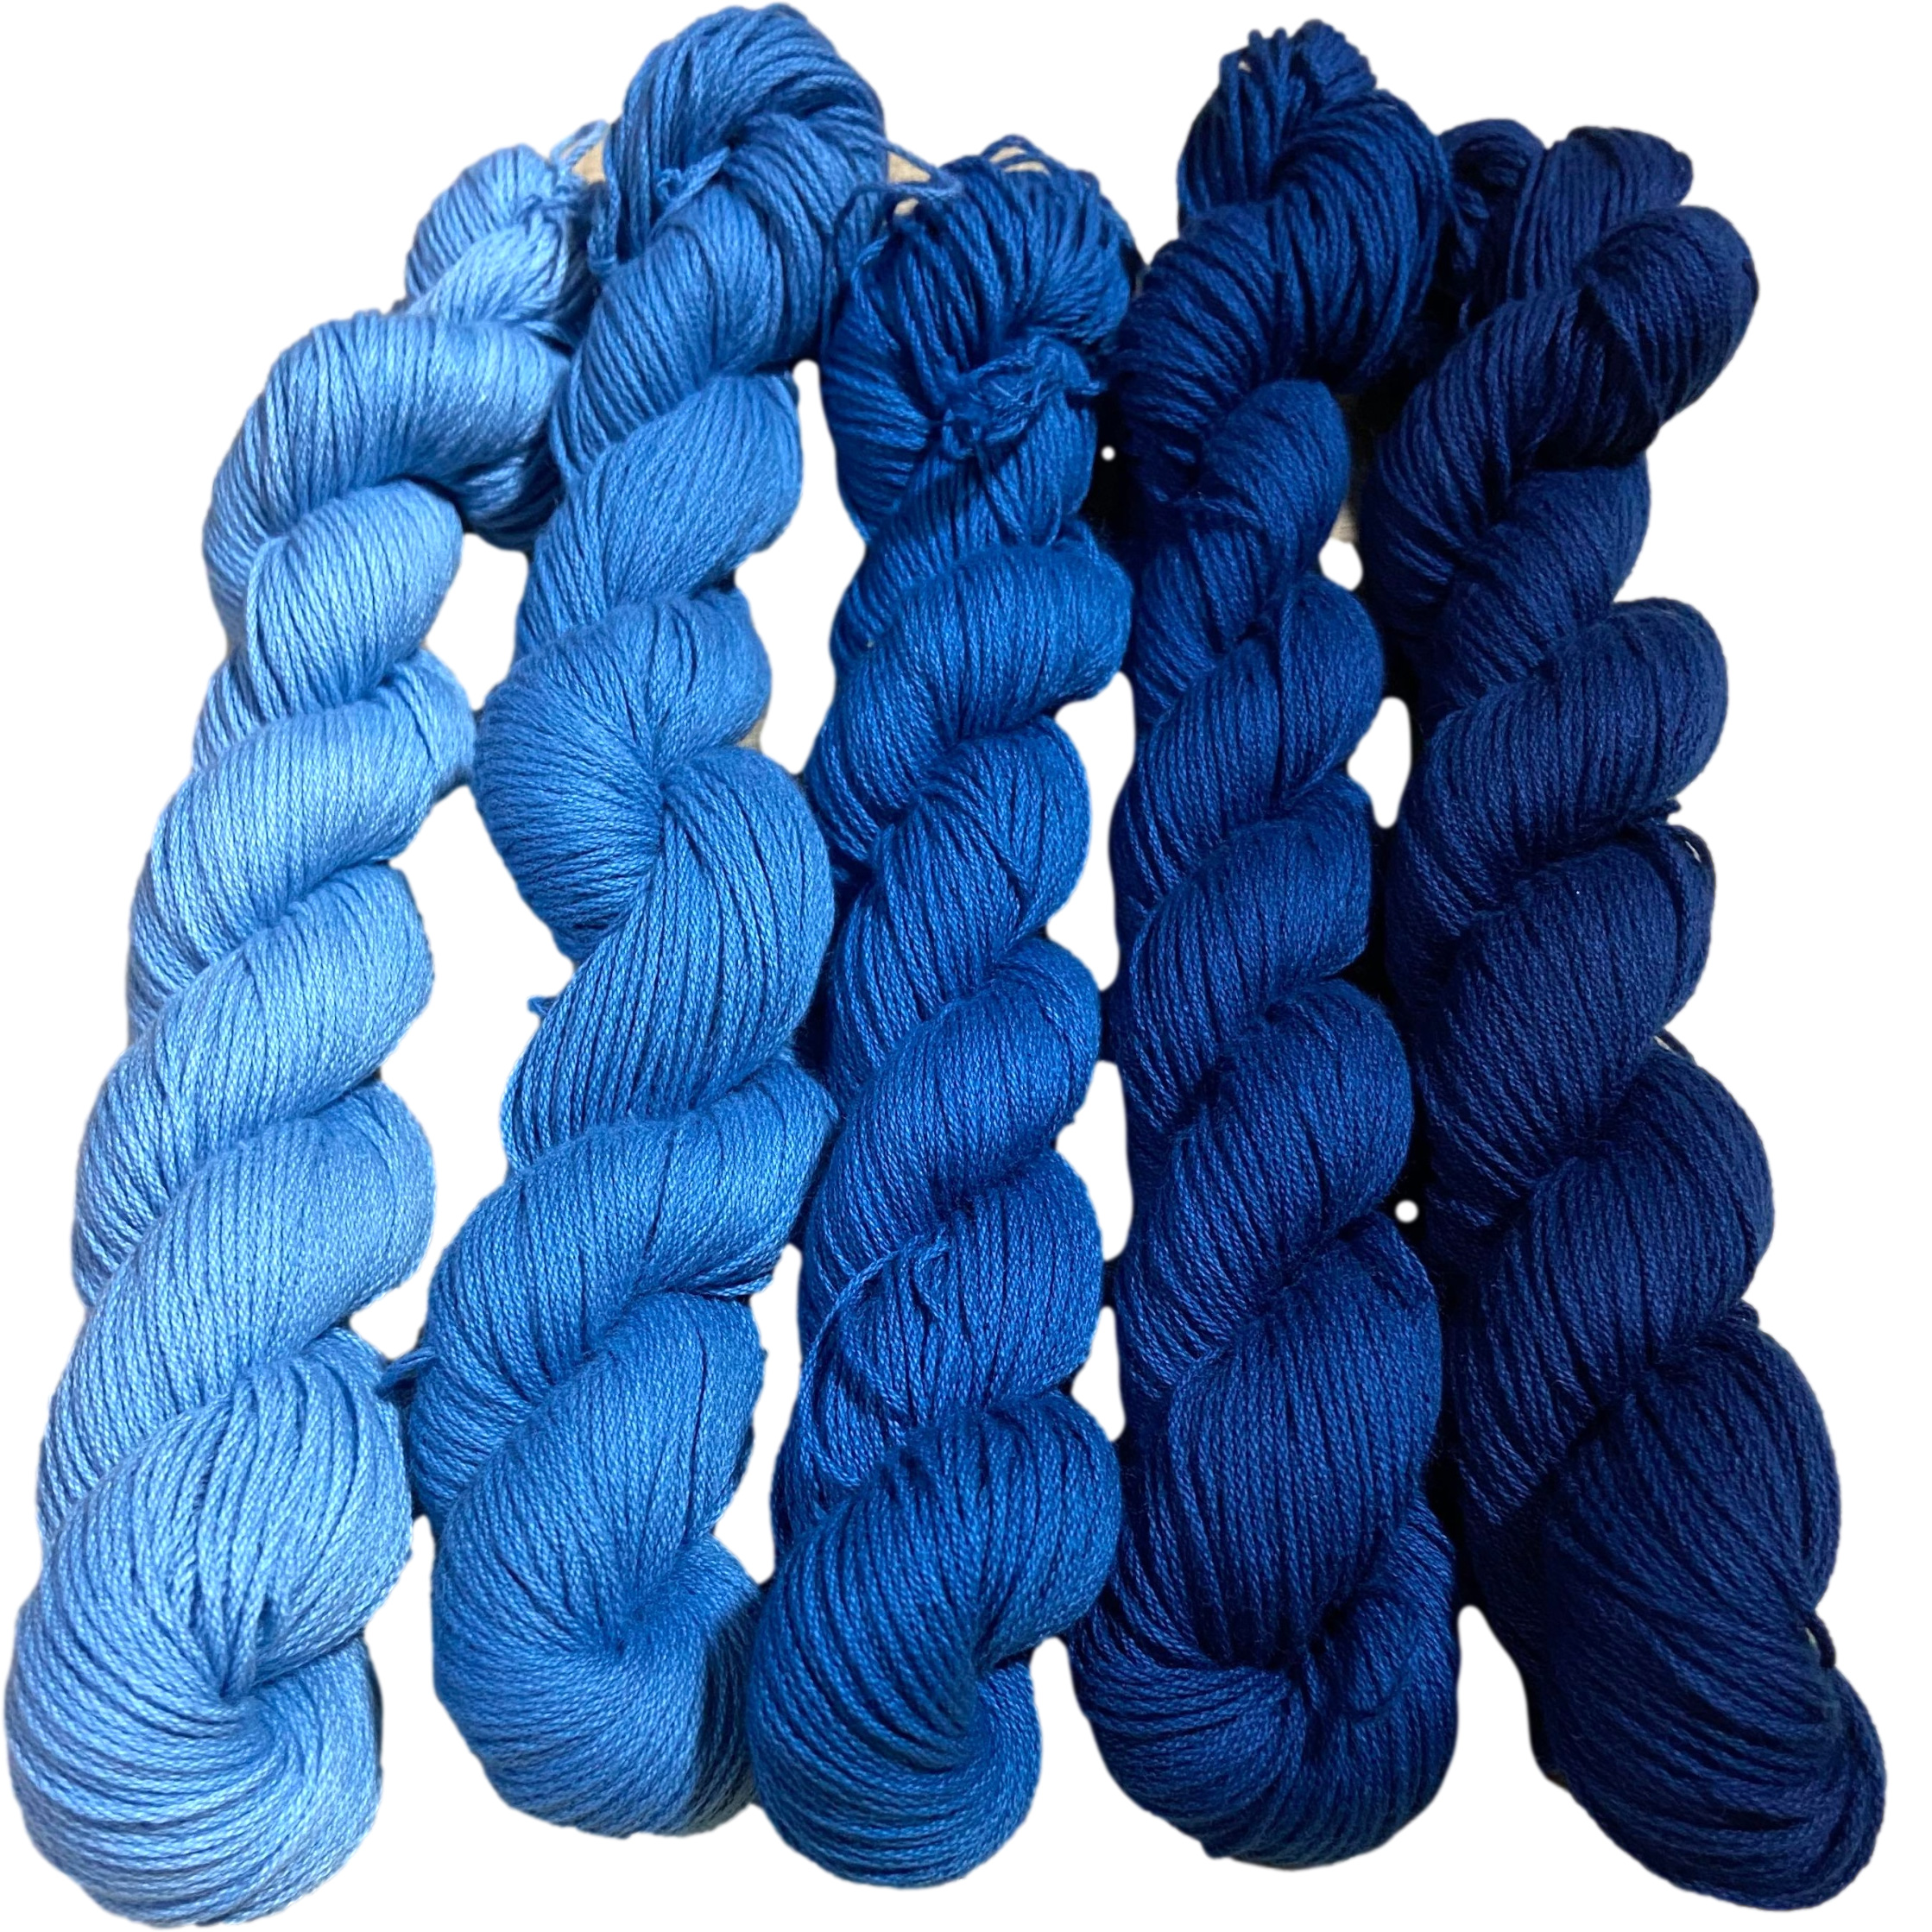 2022年に染めた藍染め刺し子糸の販売のお知らせ